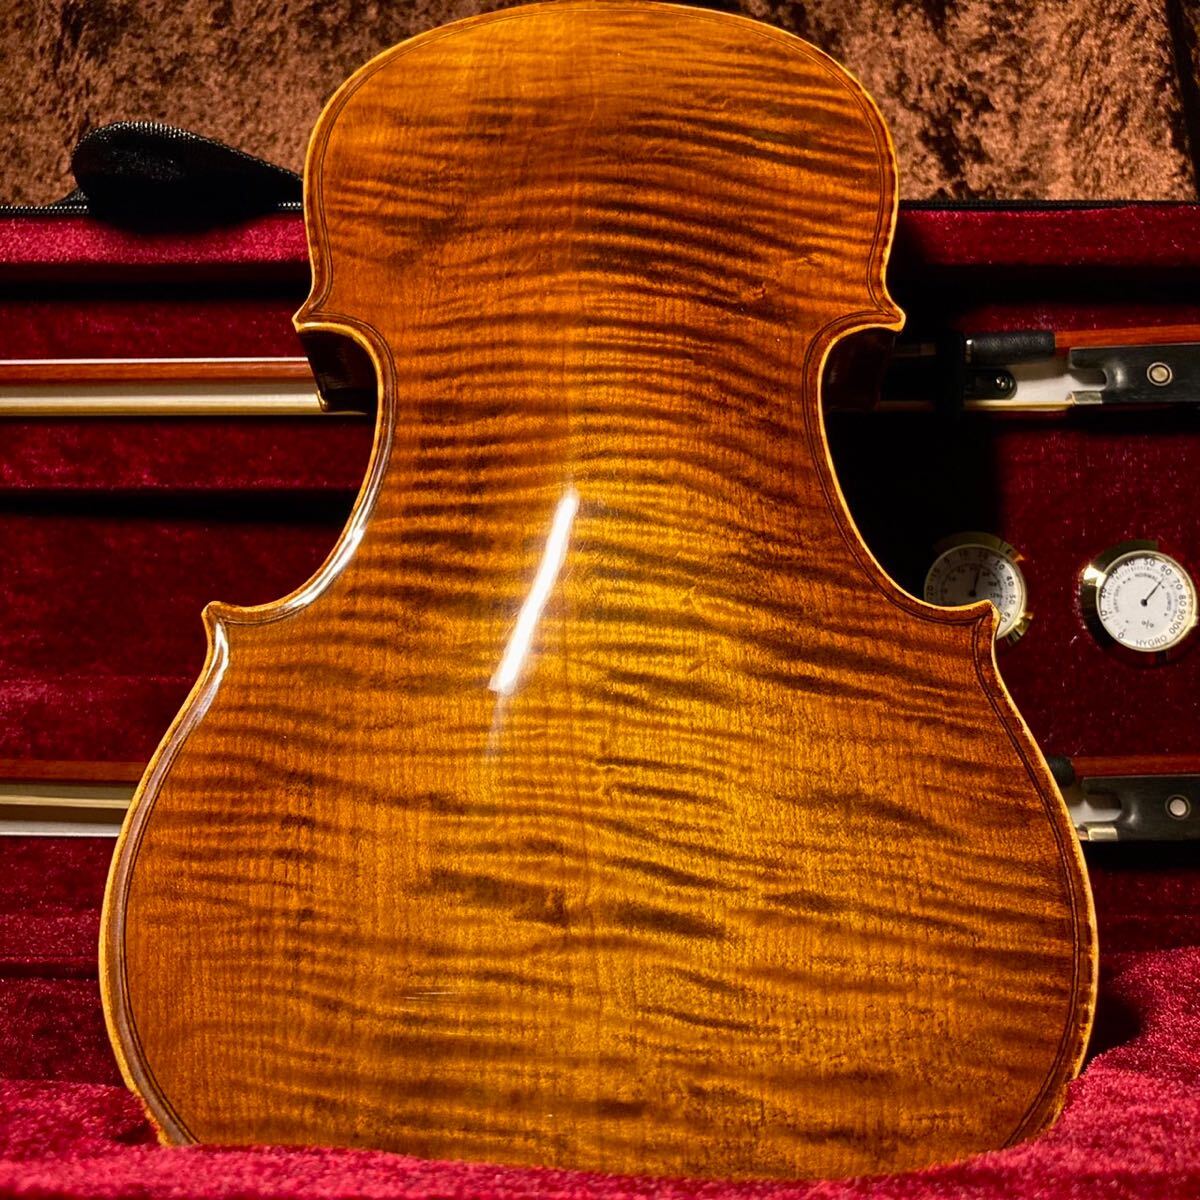 単板トラ目フレイムメイプルバック 工房製ハンドメイドバイオリン 4/4サイズ 特級美杢フレイムメイプル材使用品 付属品多数の画像1